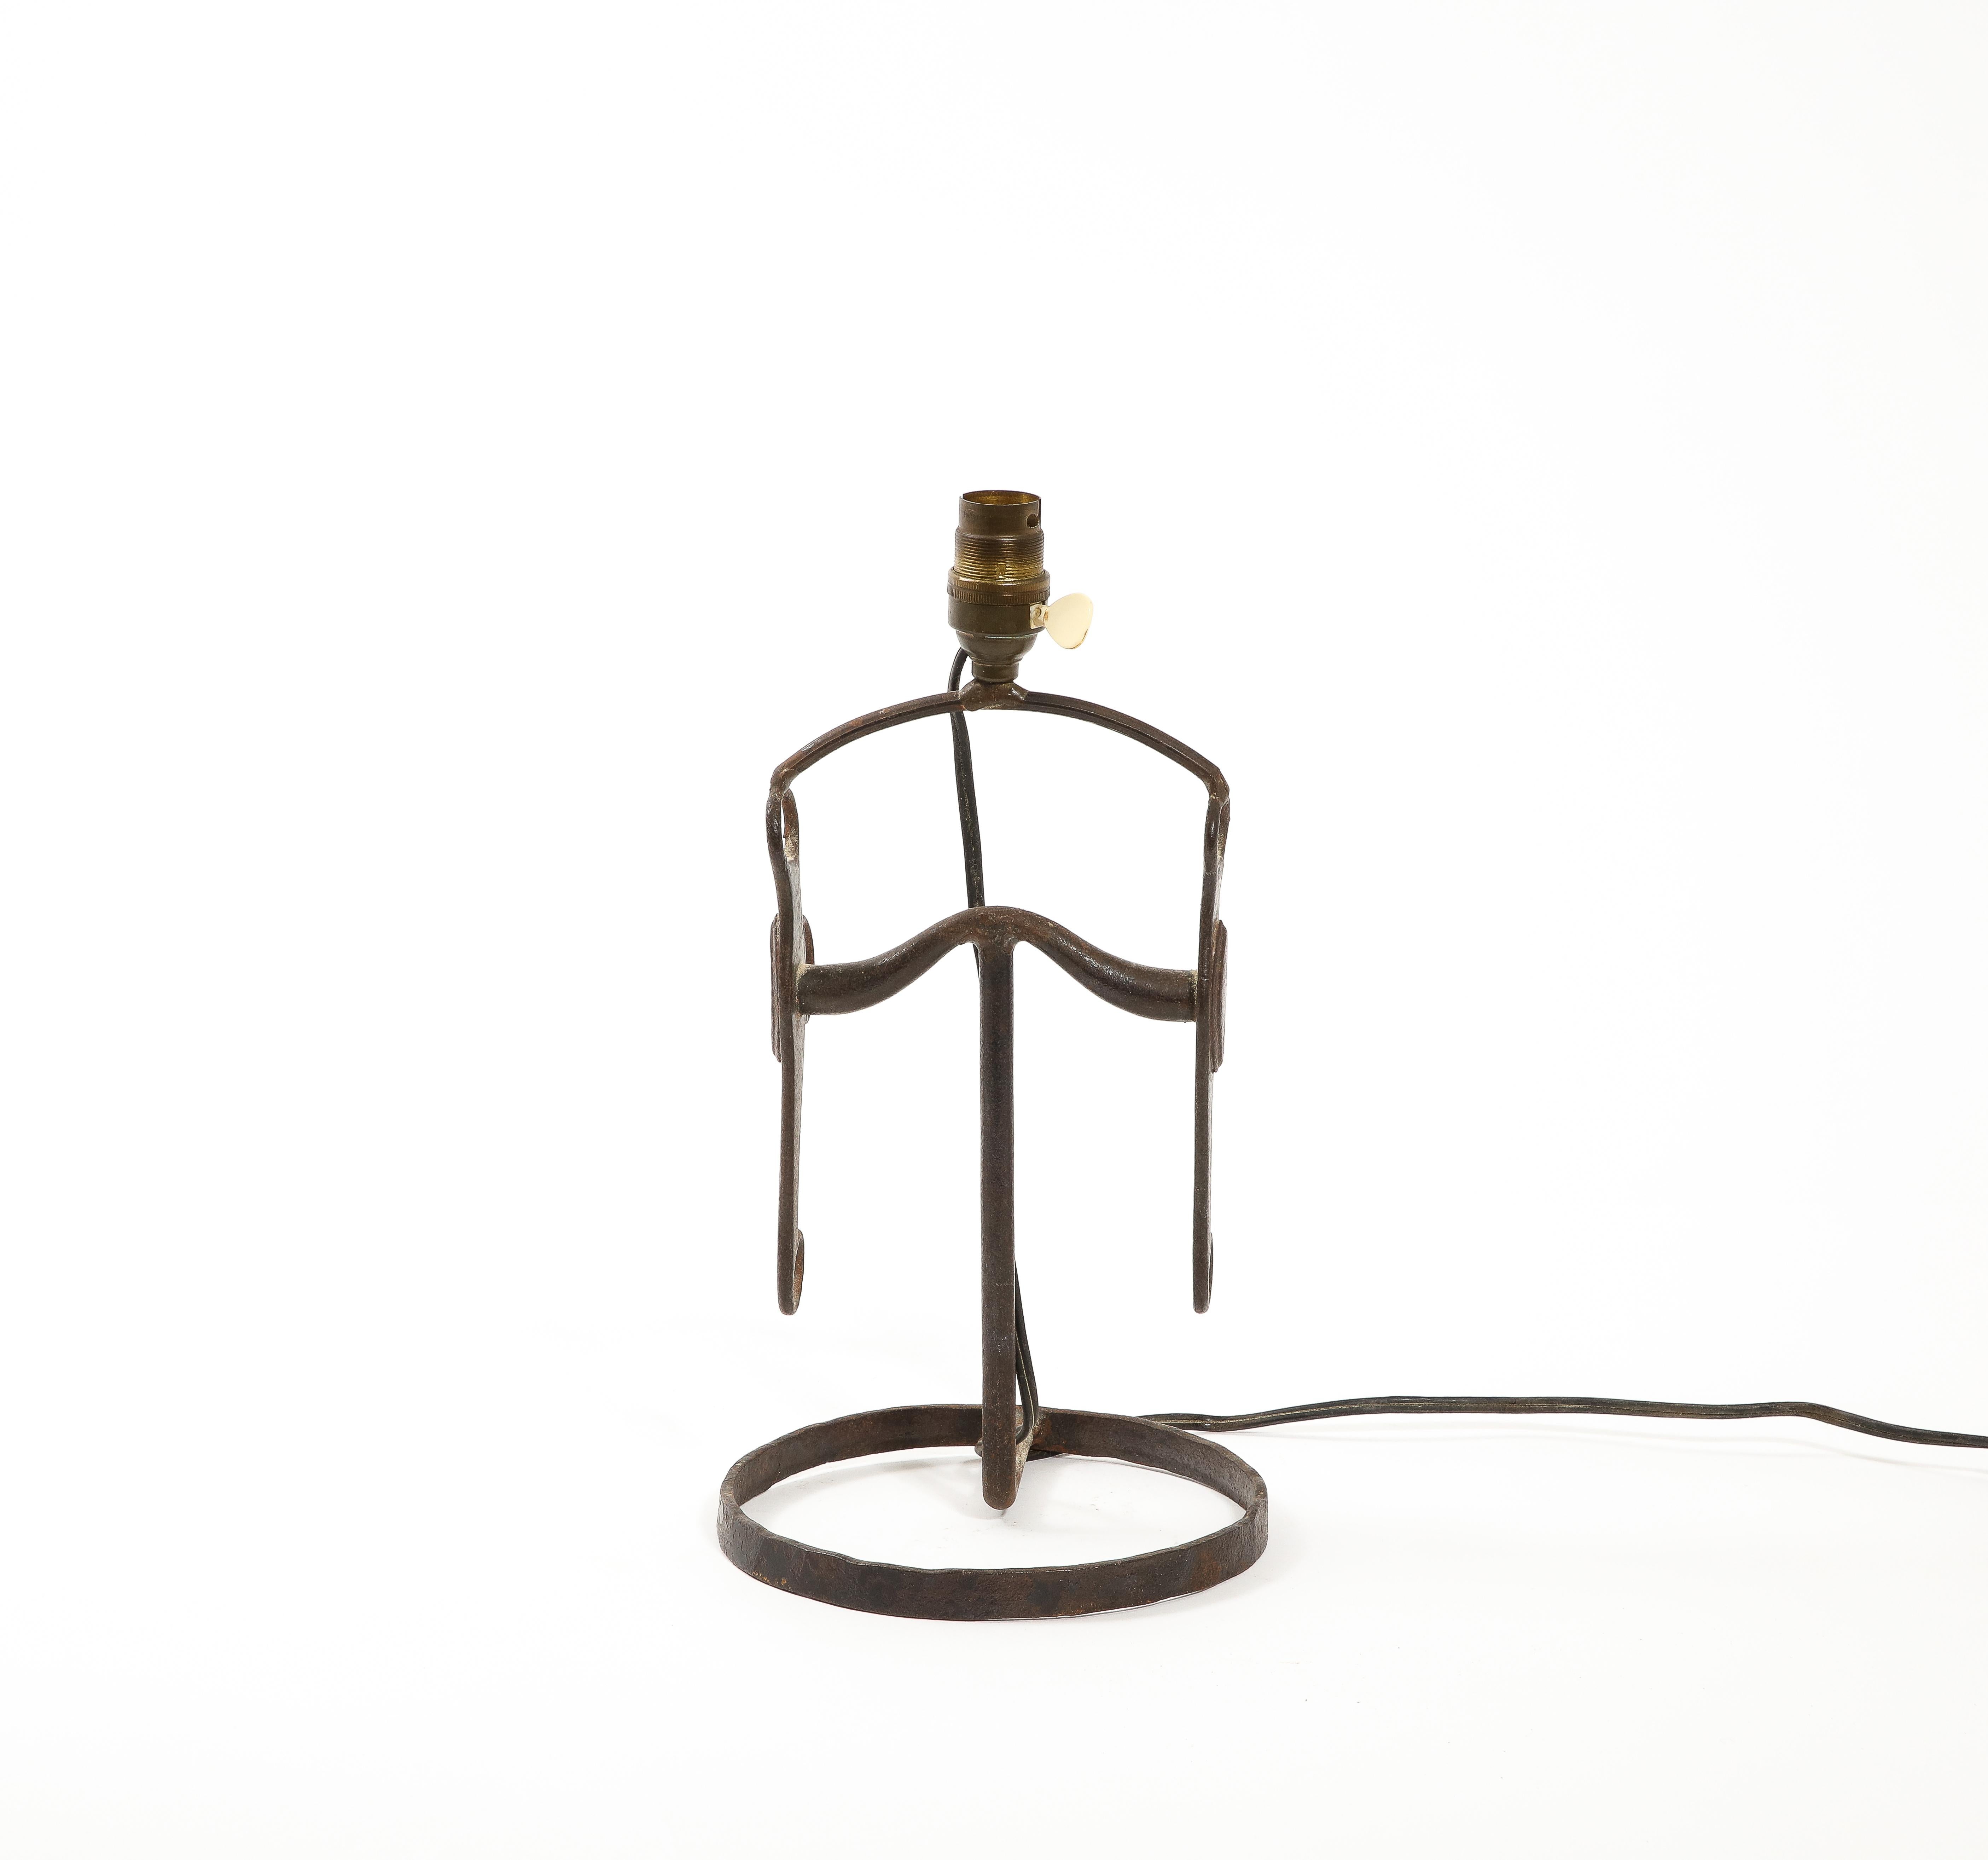 Lampe de table rustique en fer forgé inspirée d'un mors de cheval. La taille ne concerne que la base. L'abat-jour n'est pas inclus